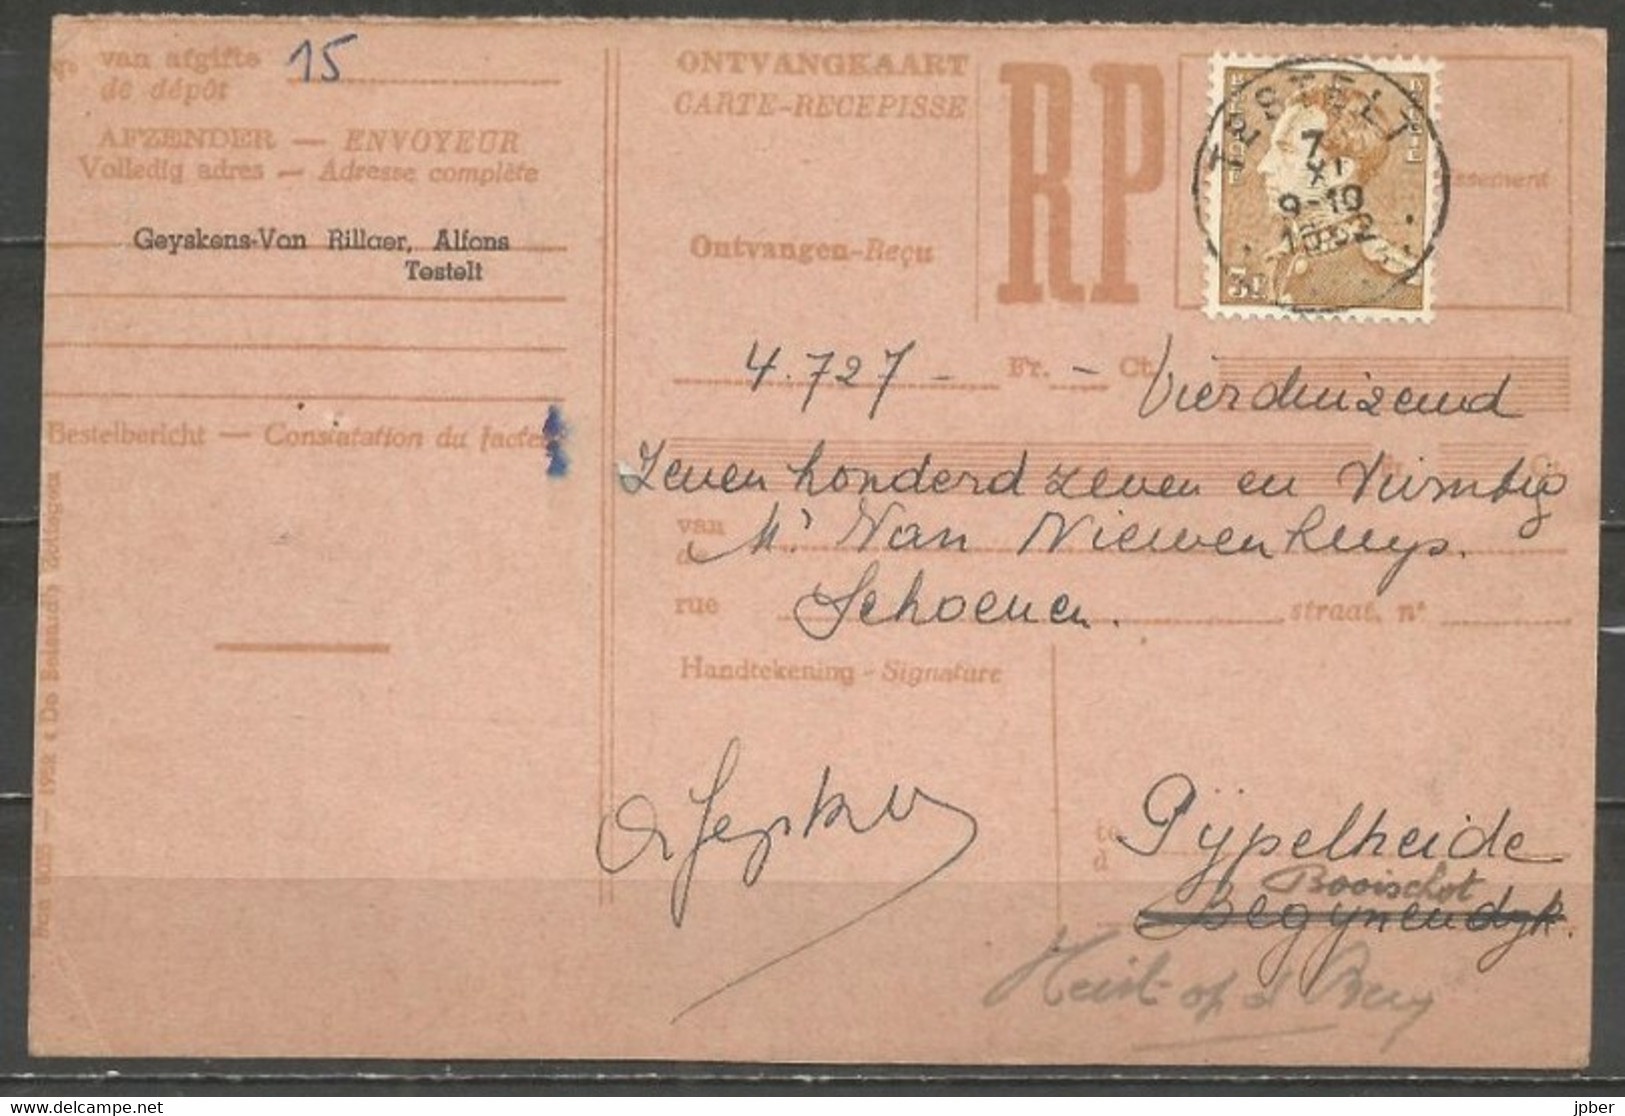 Belgique - Léopold III Poortman - N°847 Obl. TESTELT Sur Carte - 1936-1951 Poortman